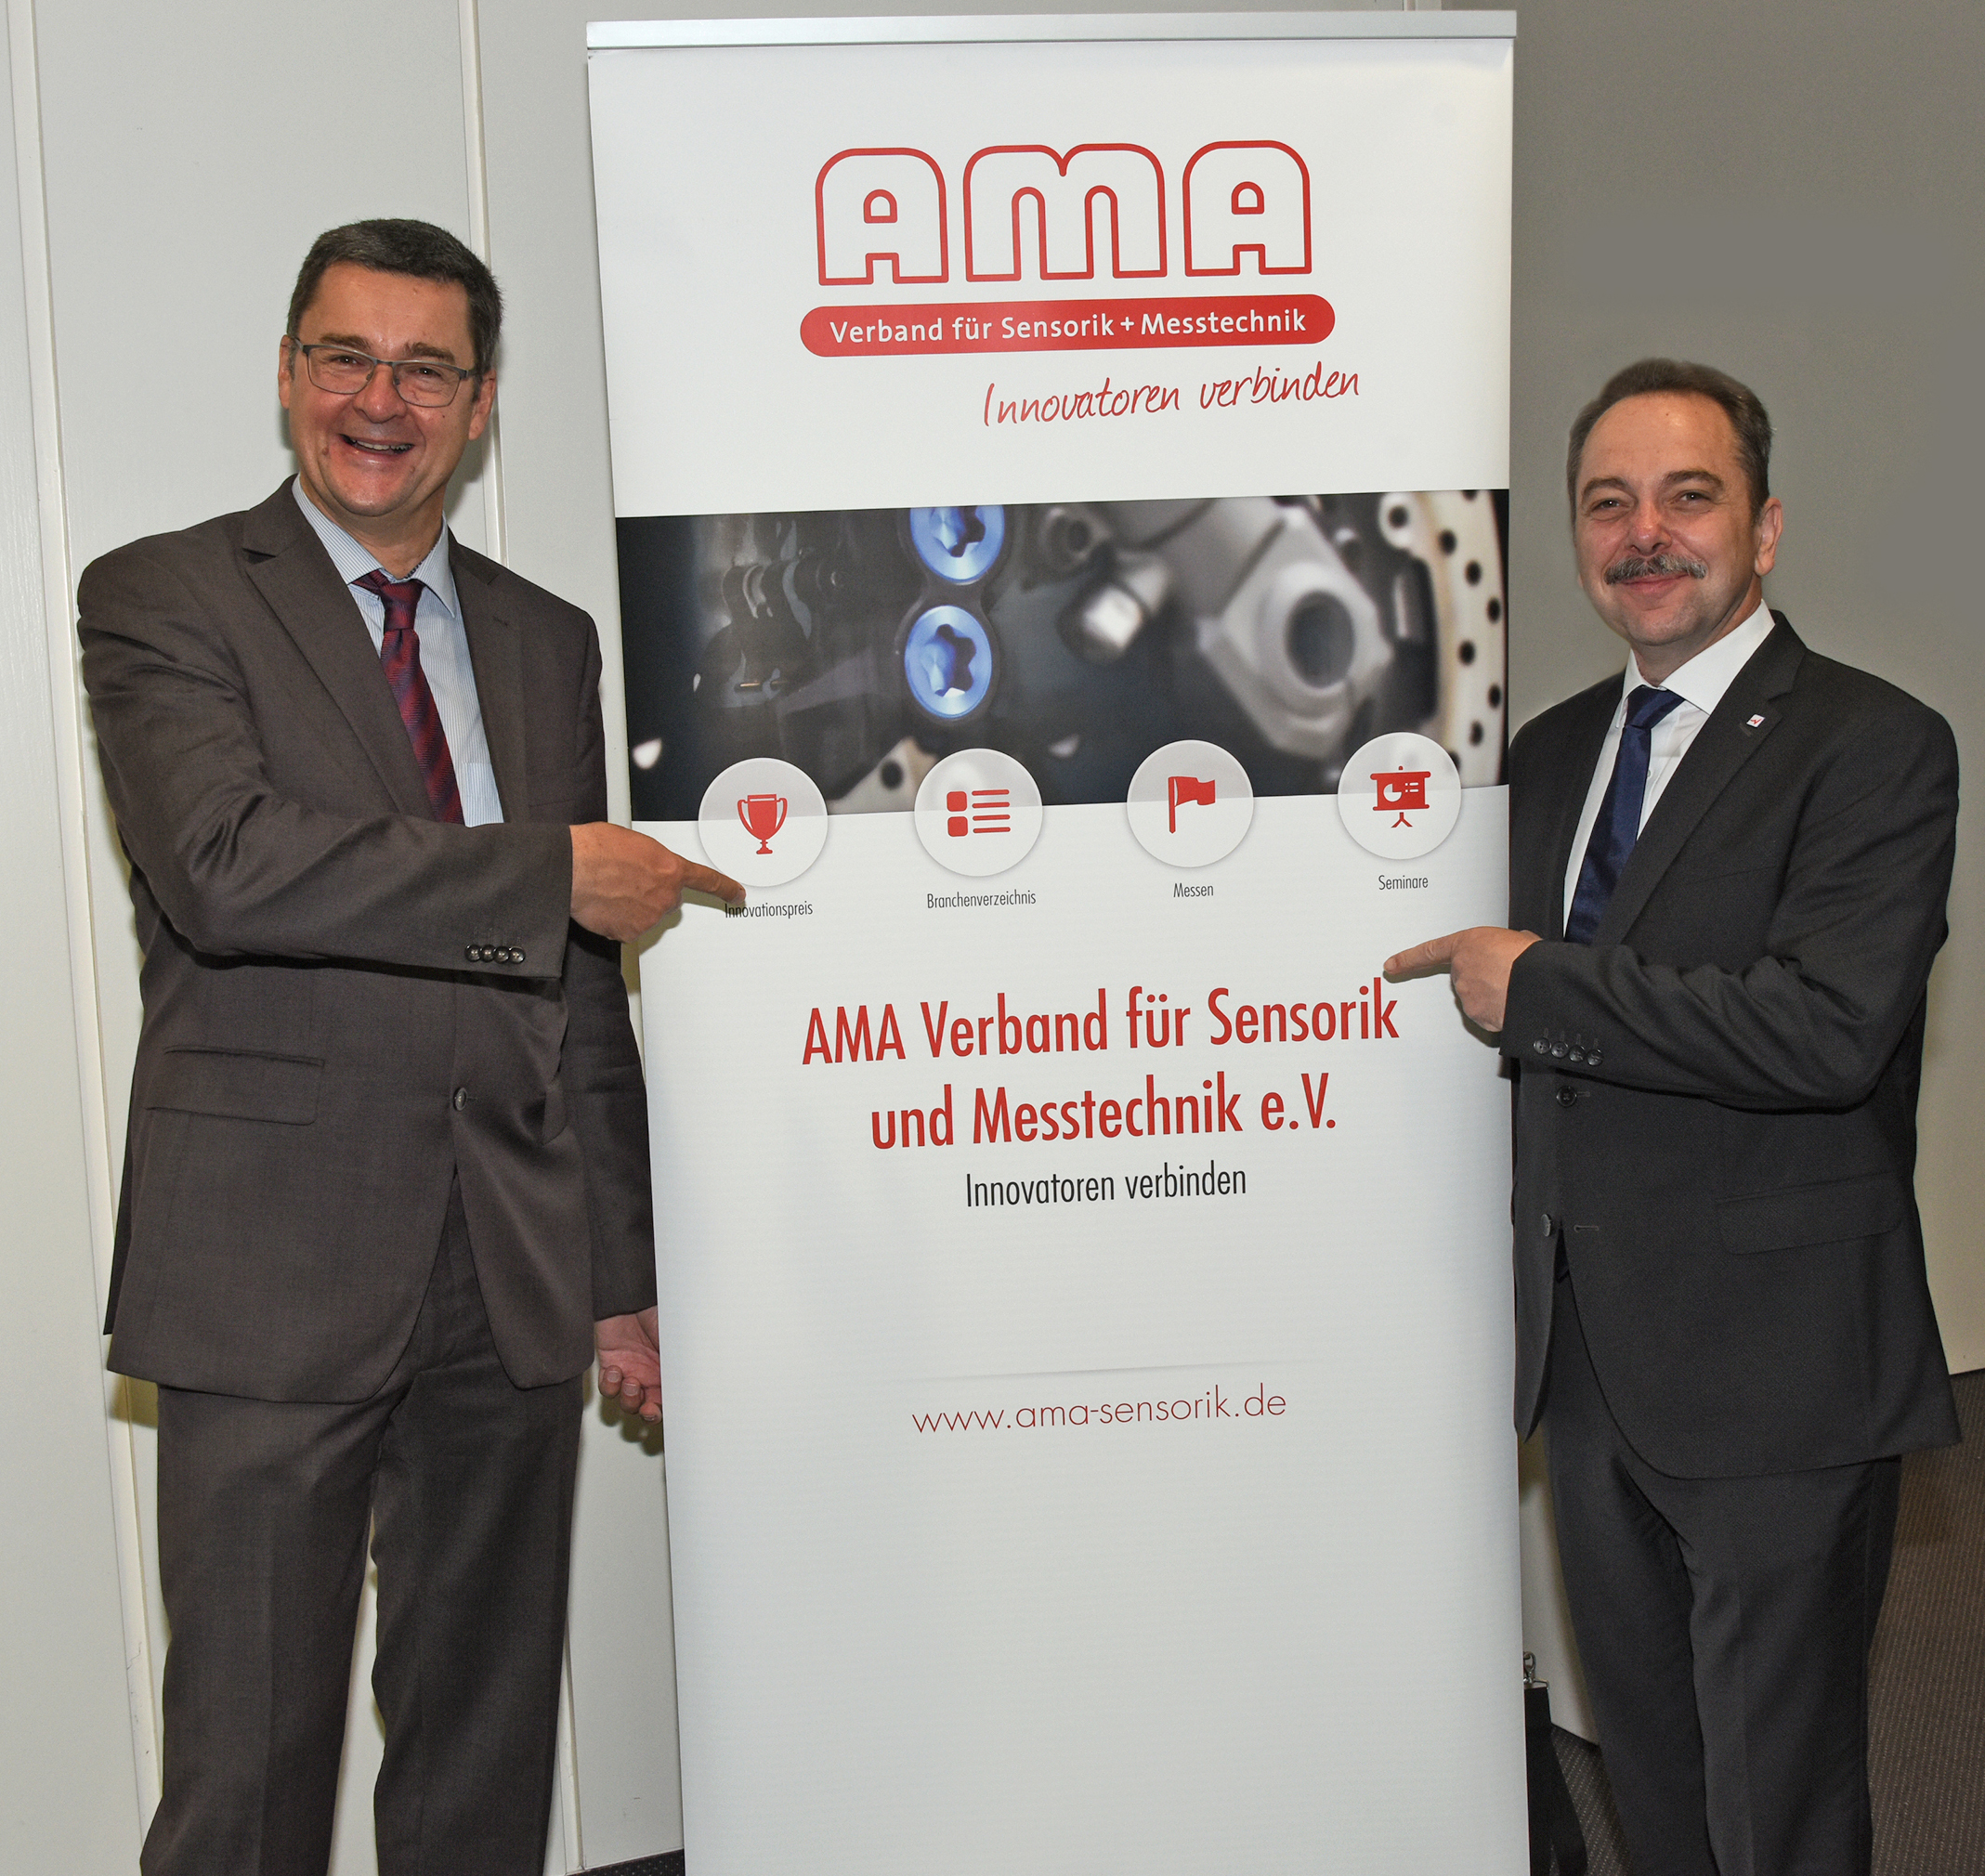 Prof. Dr. Andreas Schütze (Juryvorsitzender, links im Bild) zusammen mit dem Vorstandsvorsitzenden des AMA Verbandes Peter Krause